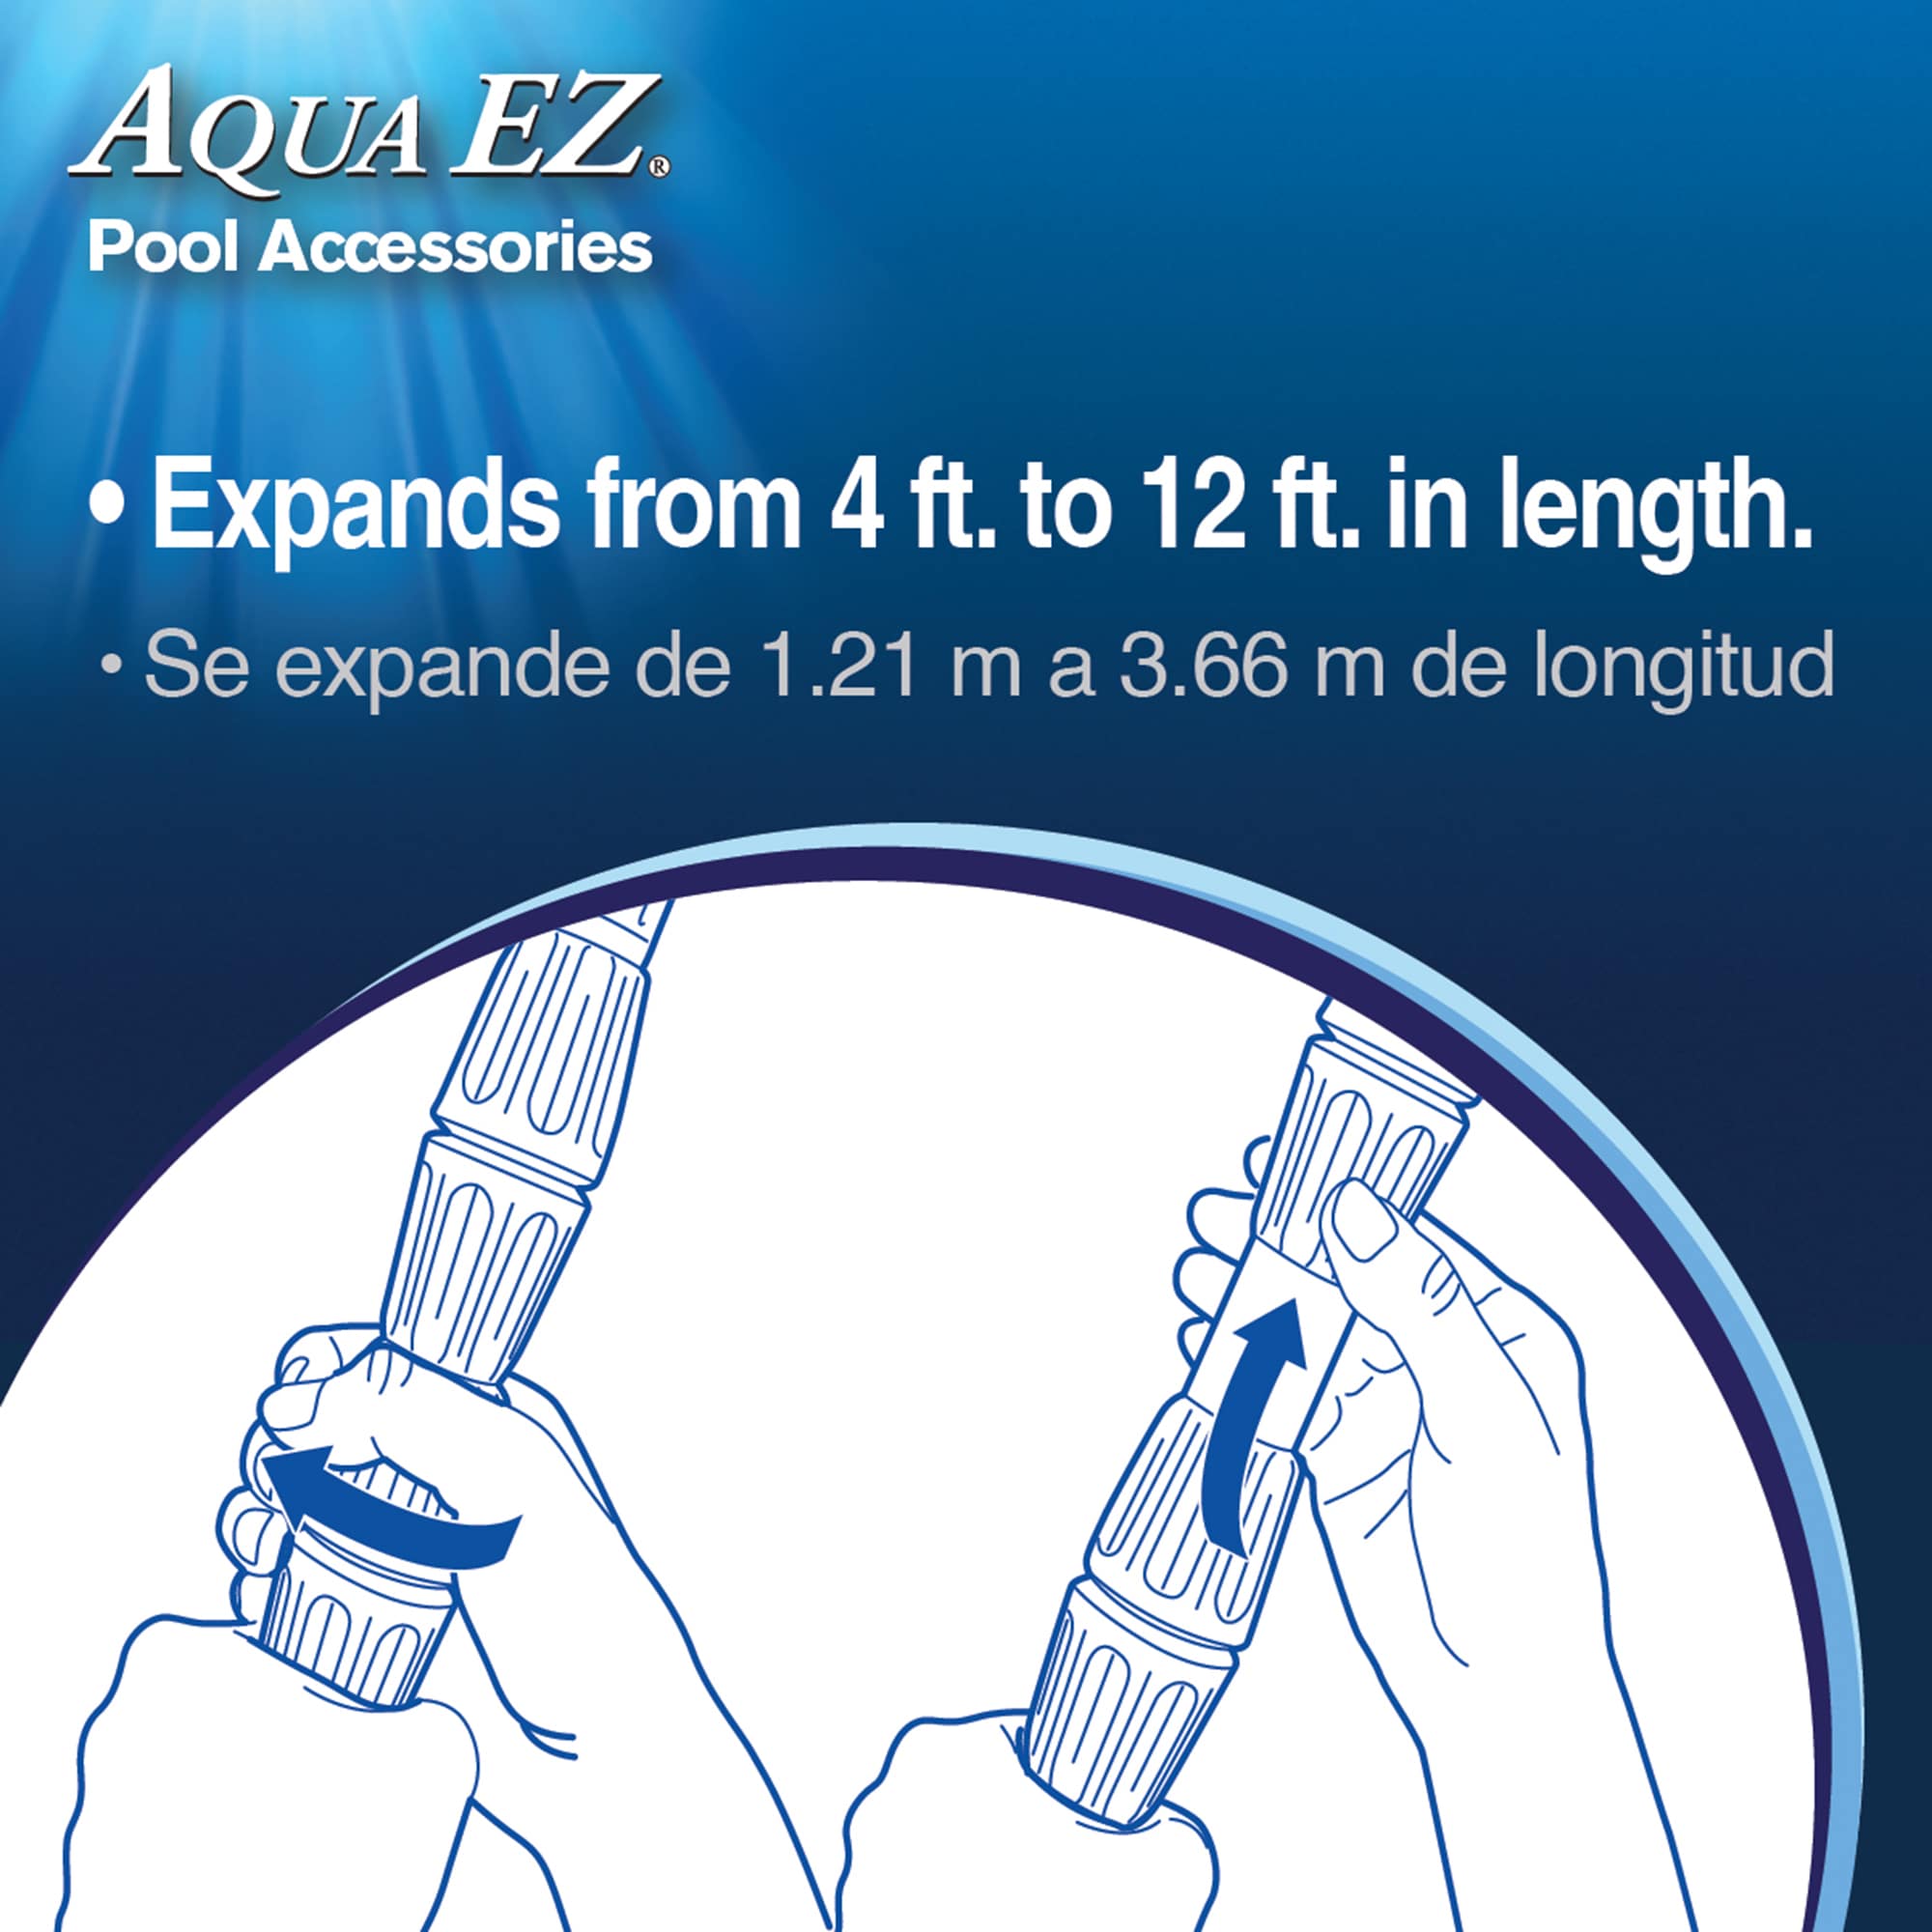 Aqua EZ 3-piece telescopic 12 ft Aluminum Pool Pole in the Pool